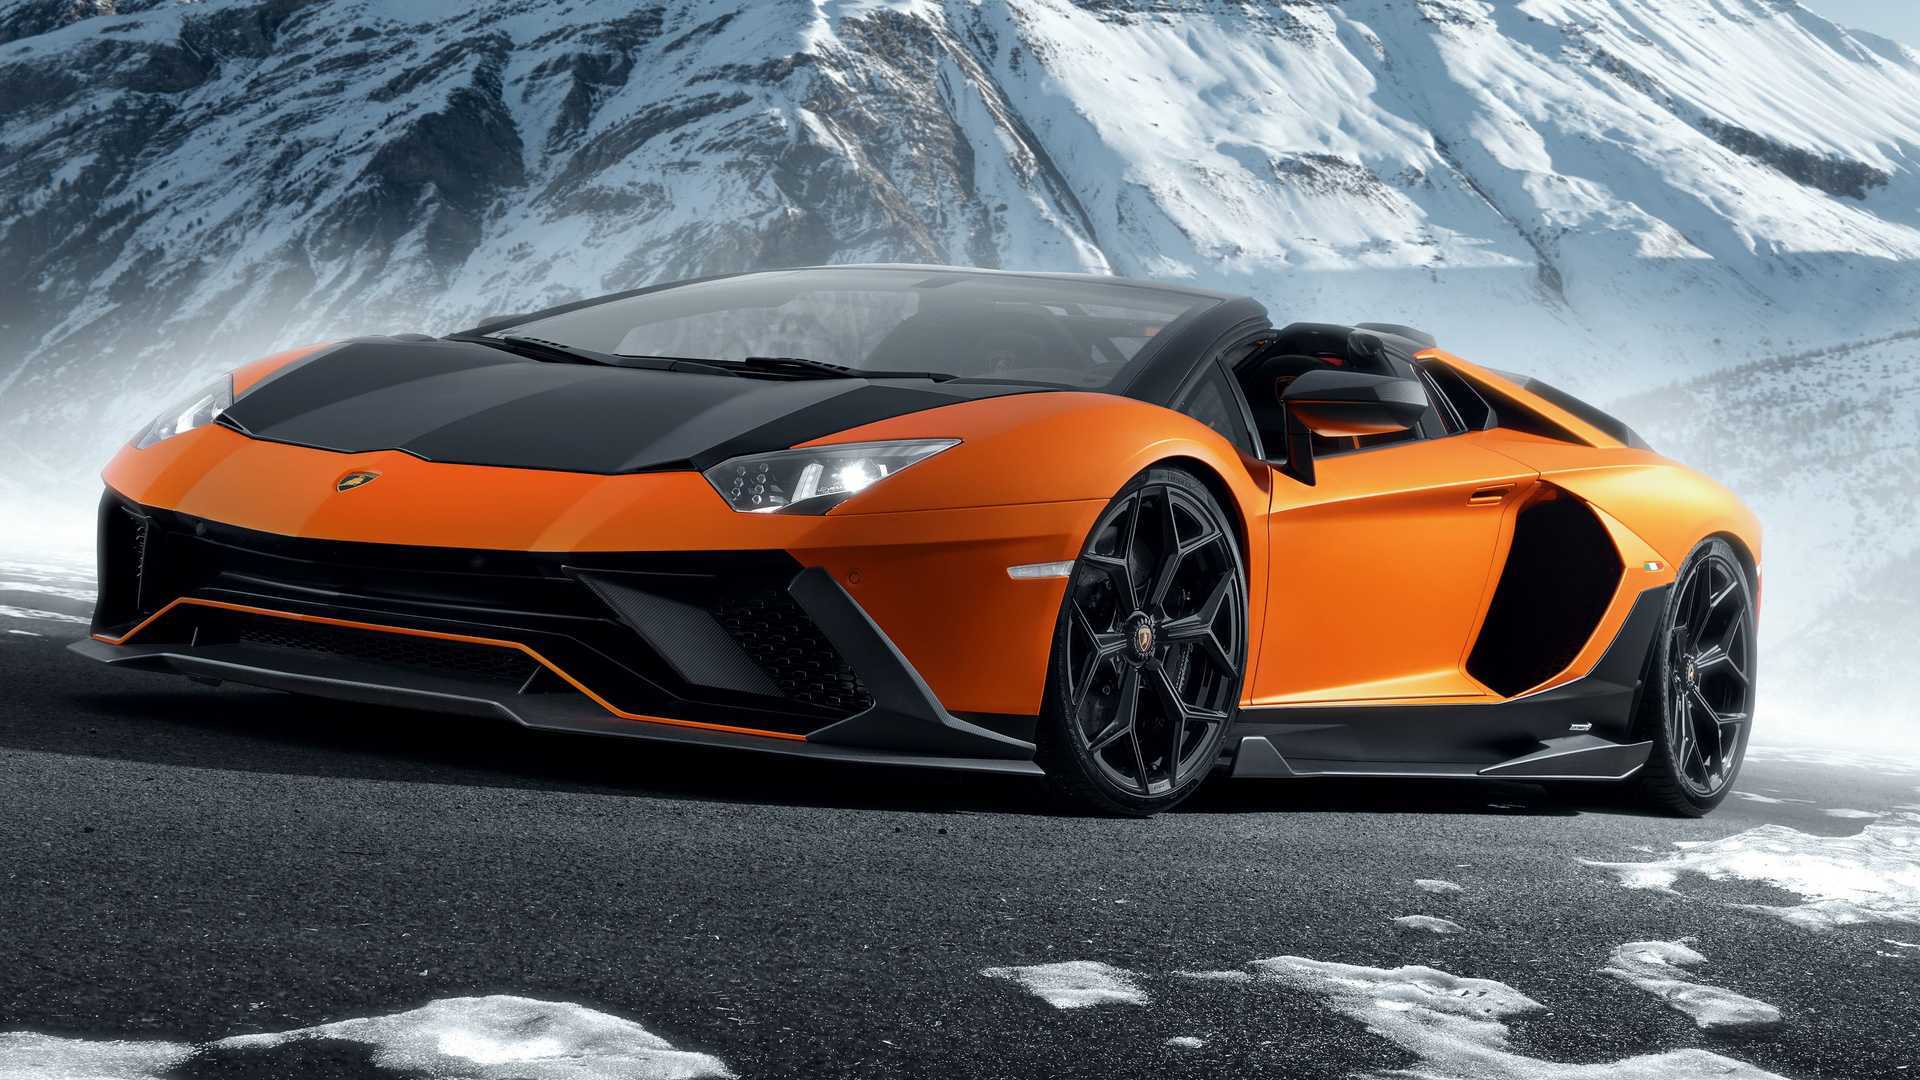   Lamborghini      Motor